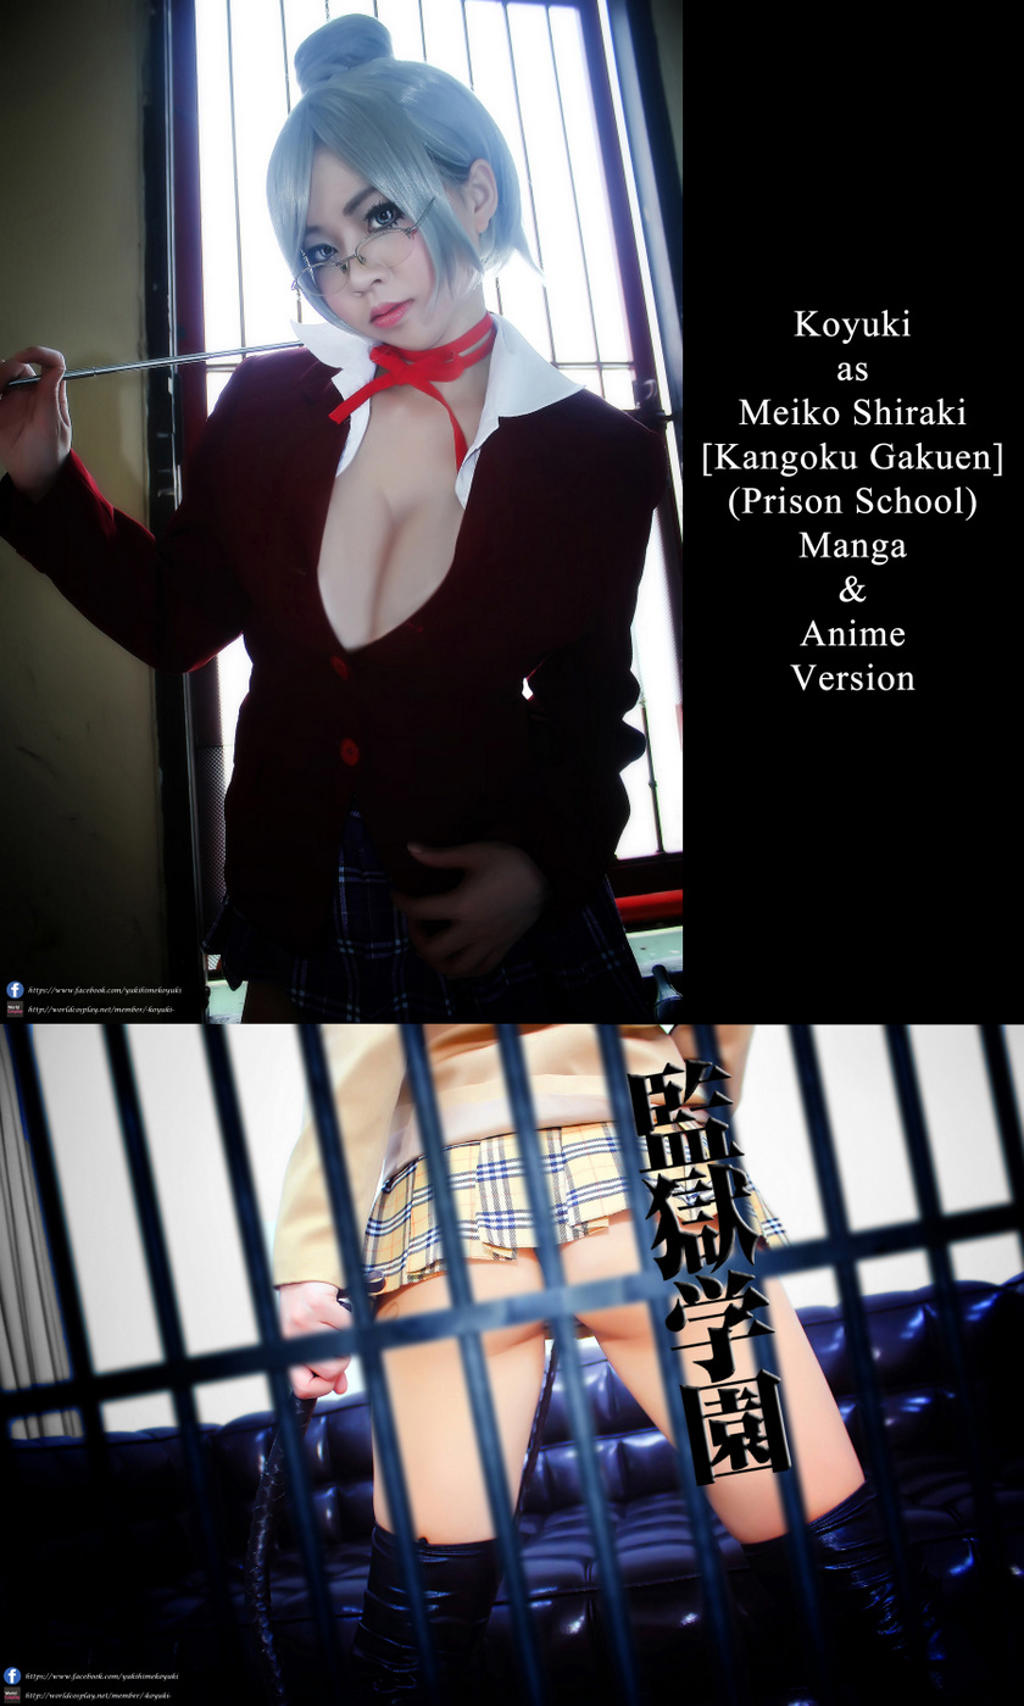 [Koyuki Yukihime] Meiko Shiraki Cosplay Samples [Prison School]